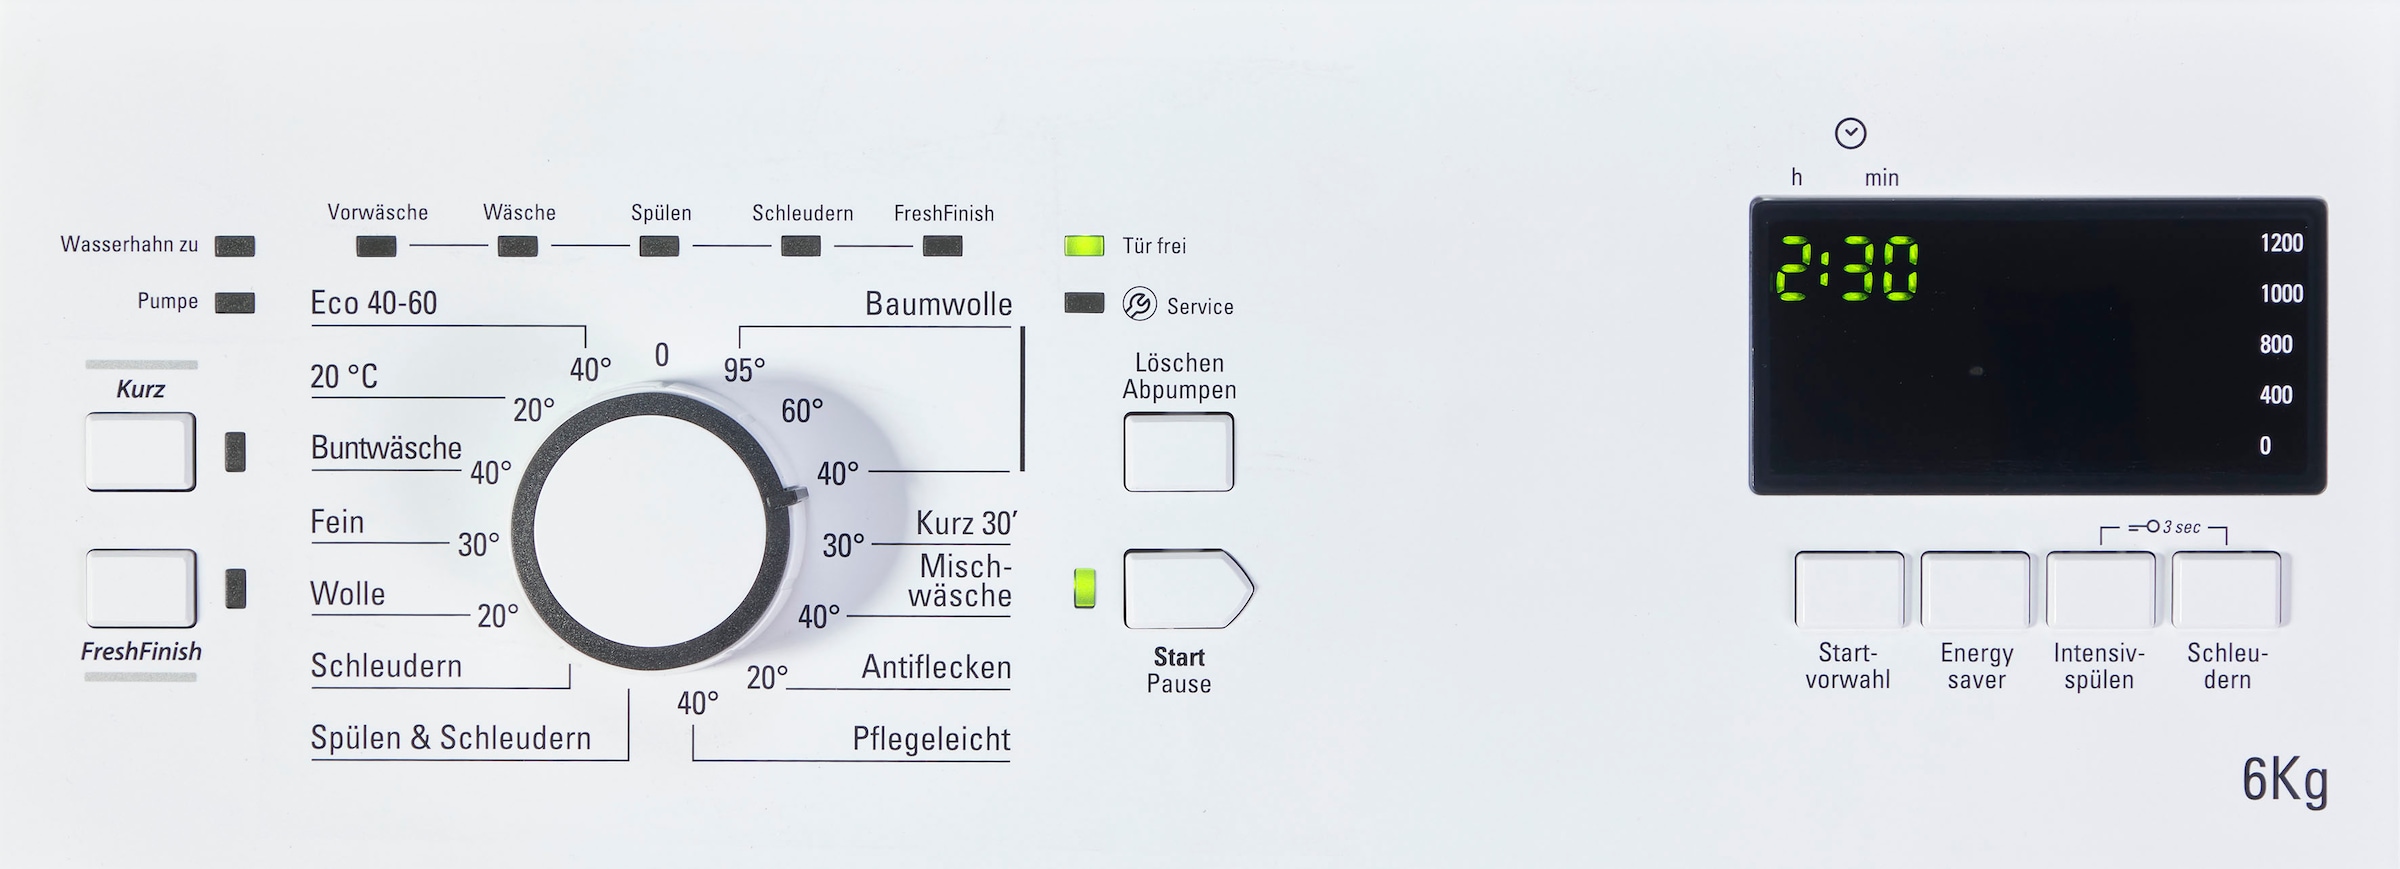 BAUKNECHT Toplader Smart 12C«, Smart Waschmaschine »WAT Eco 6 U/min 1200 kg, bestellen OTTO jetzt WAT 12C, bei Eco